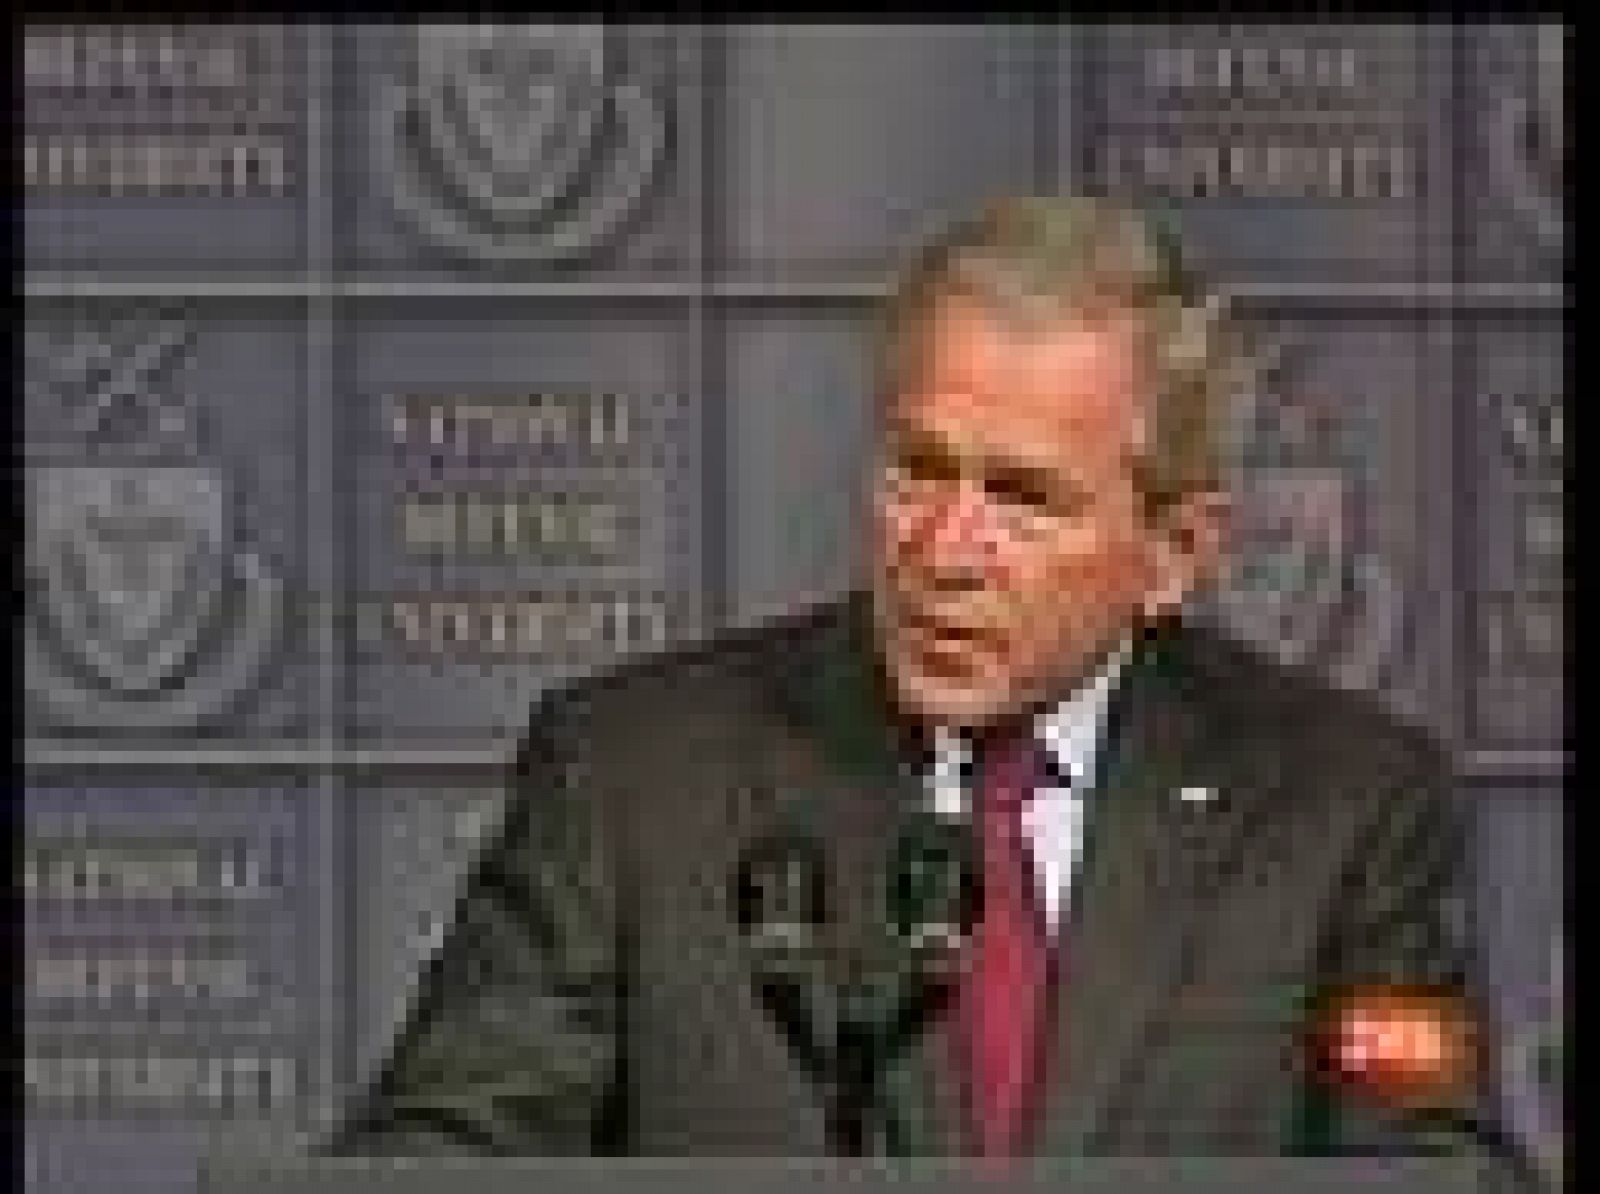 En el discurso pronunciado por Bush en la Universidad Nacional de Defensa ha declarado ser optimista sobre la situación en Irak, lo que permitirá reducir el contingente de tropas desplegadas allí. En los próximos meses regresarán unos 8.000 soldados sin ser reemplazados.